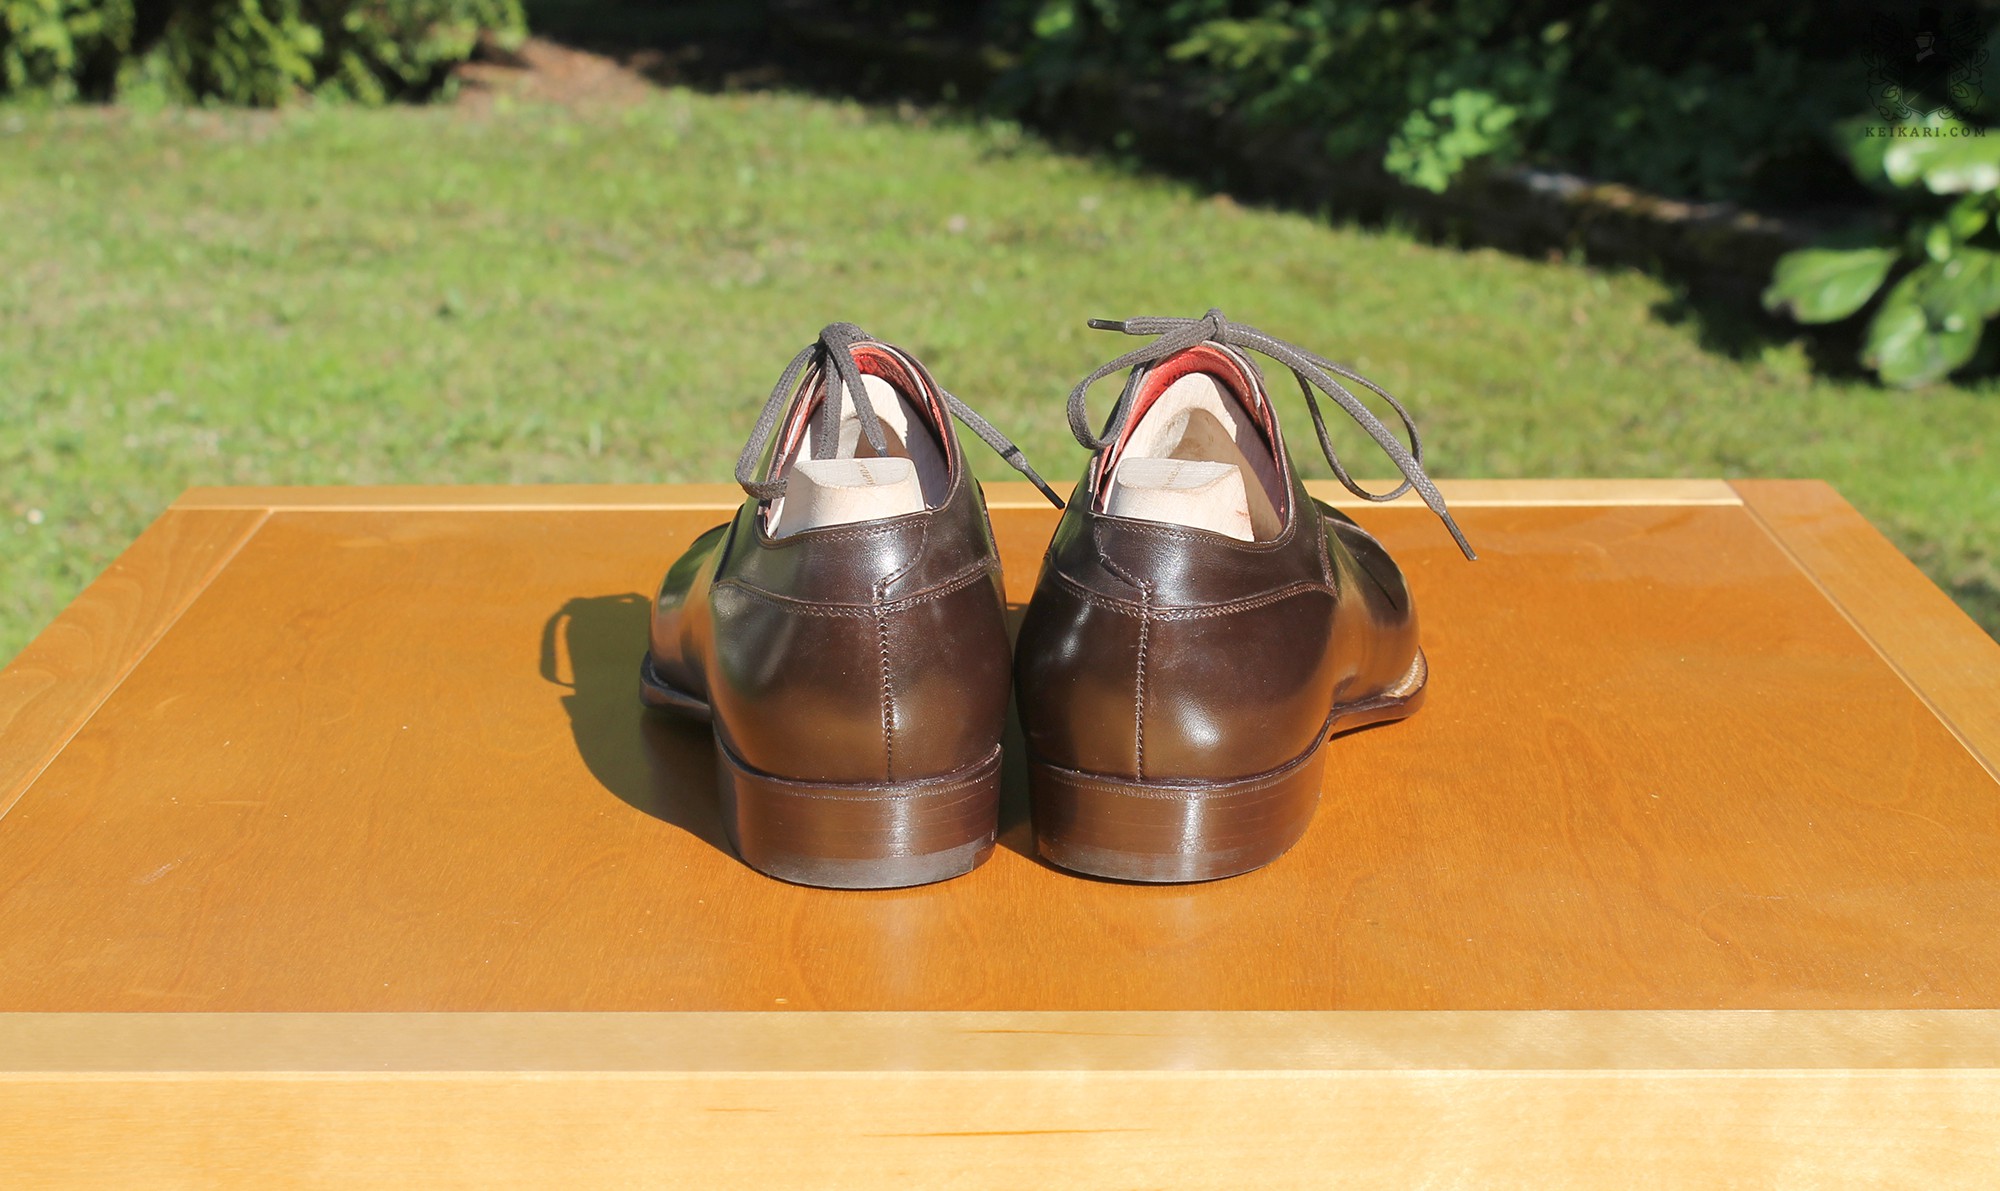 Anatomy_of_Saint_Crispin's_shoes_at_Keikari_dot_com05